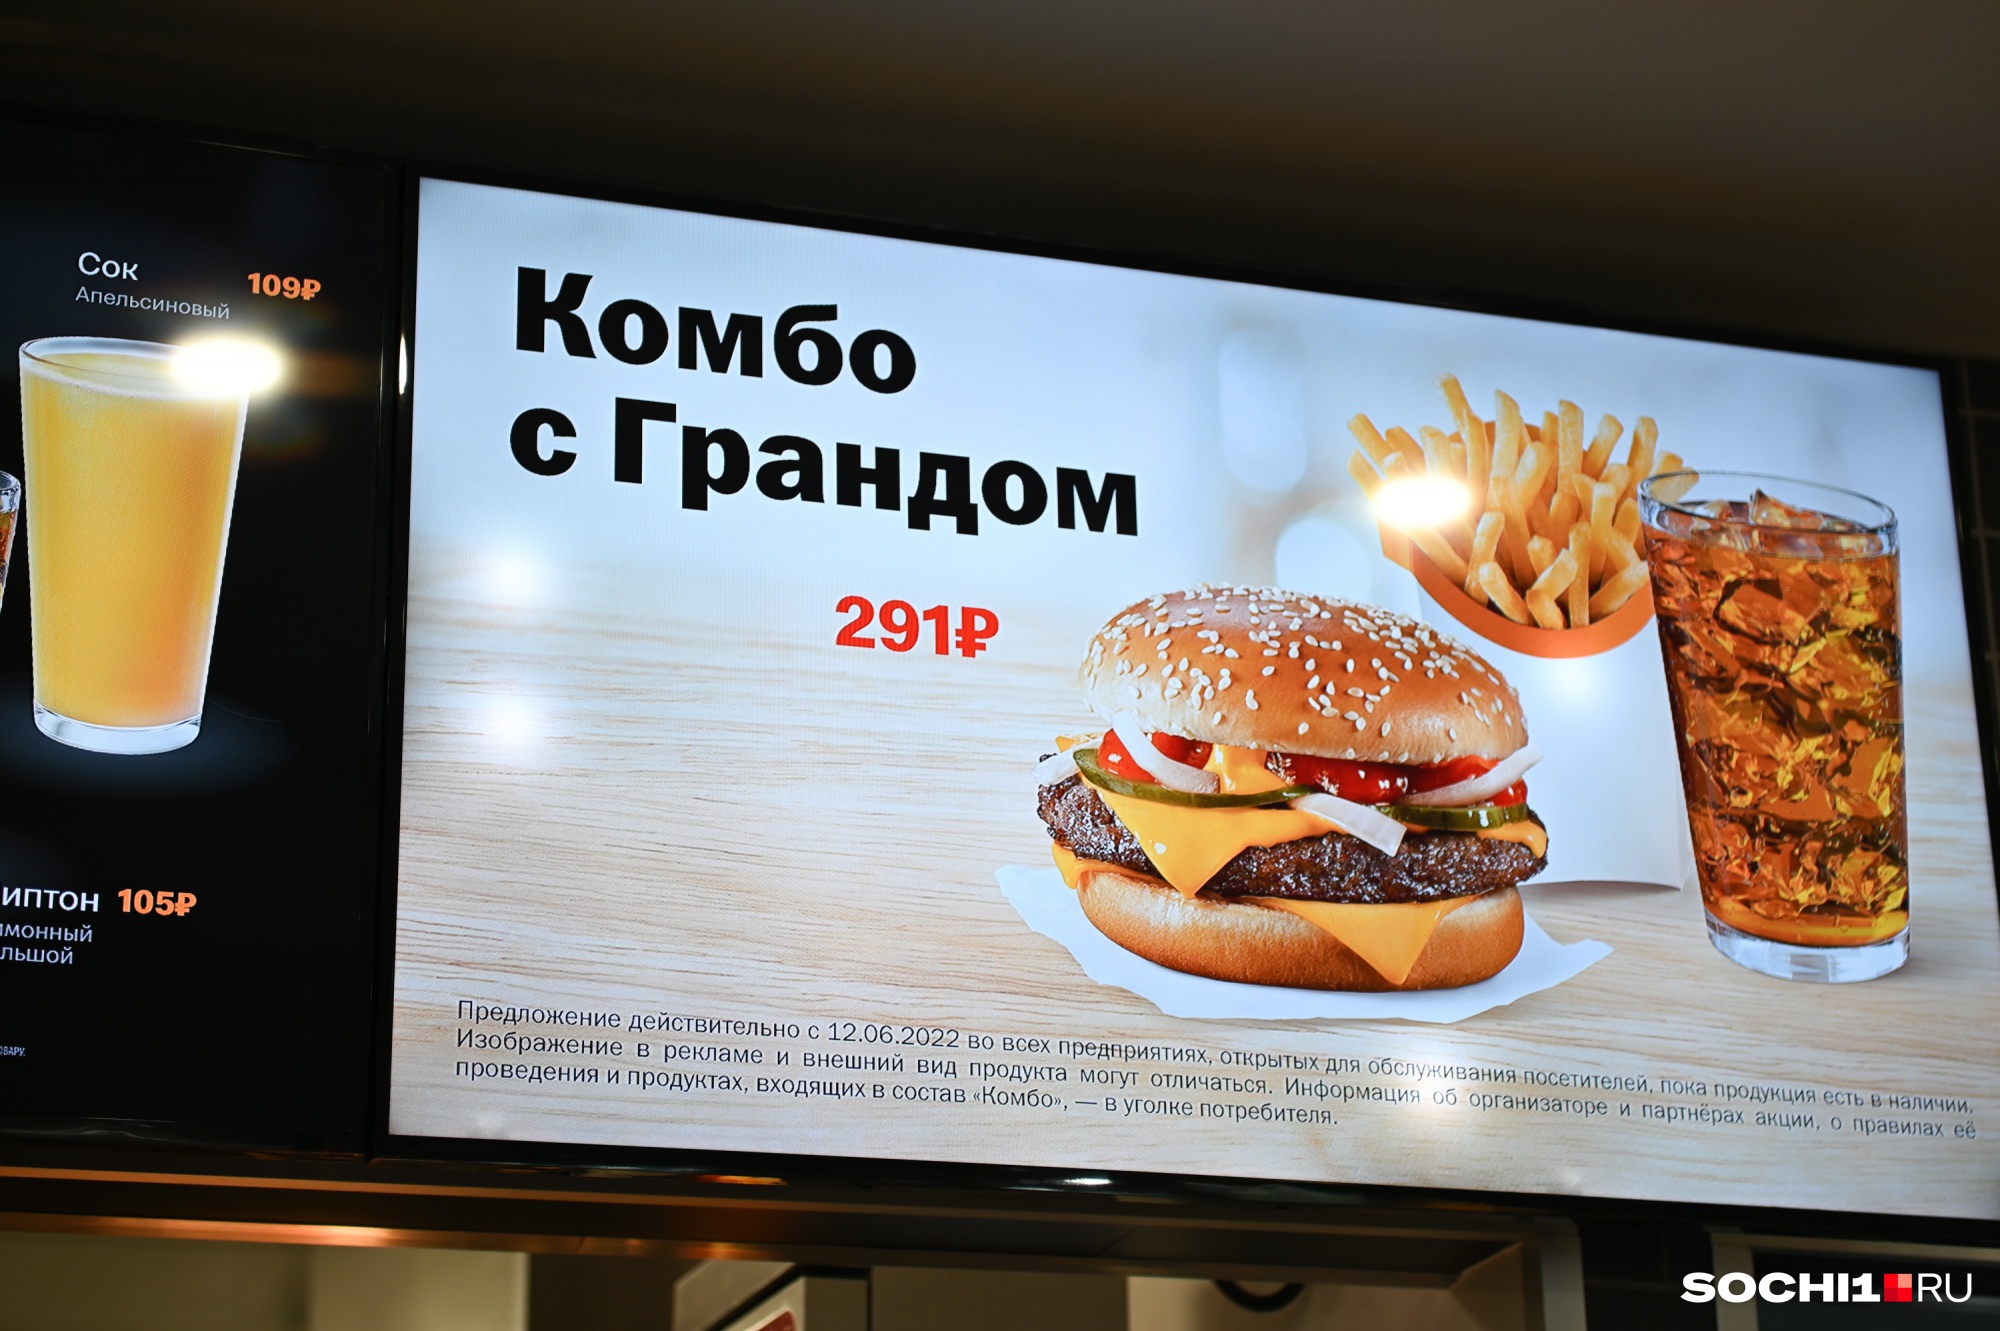 Цены и качество продуктов остались на уровне McDonald's, утверждают в сети